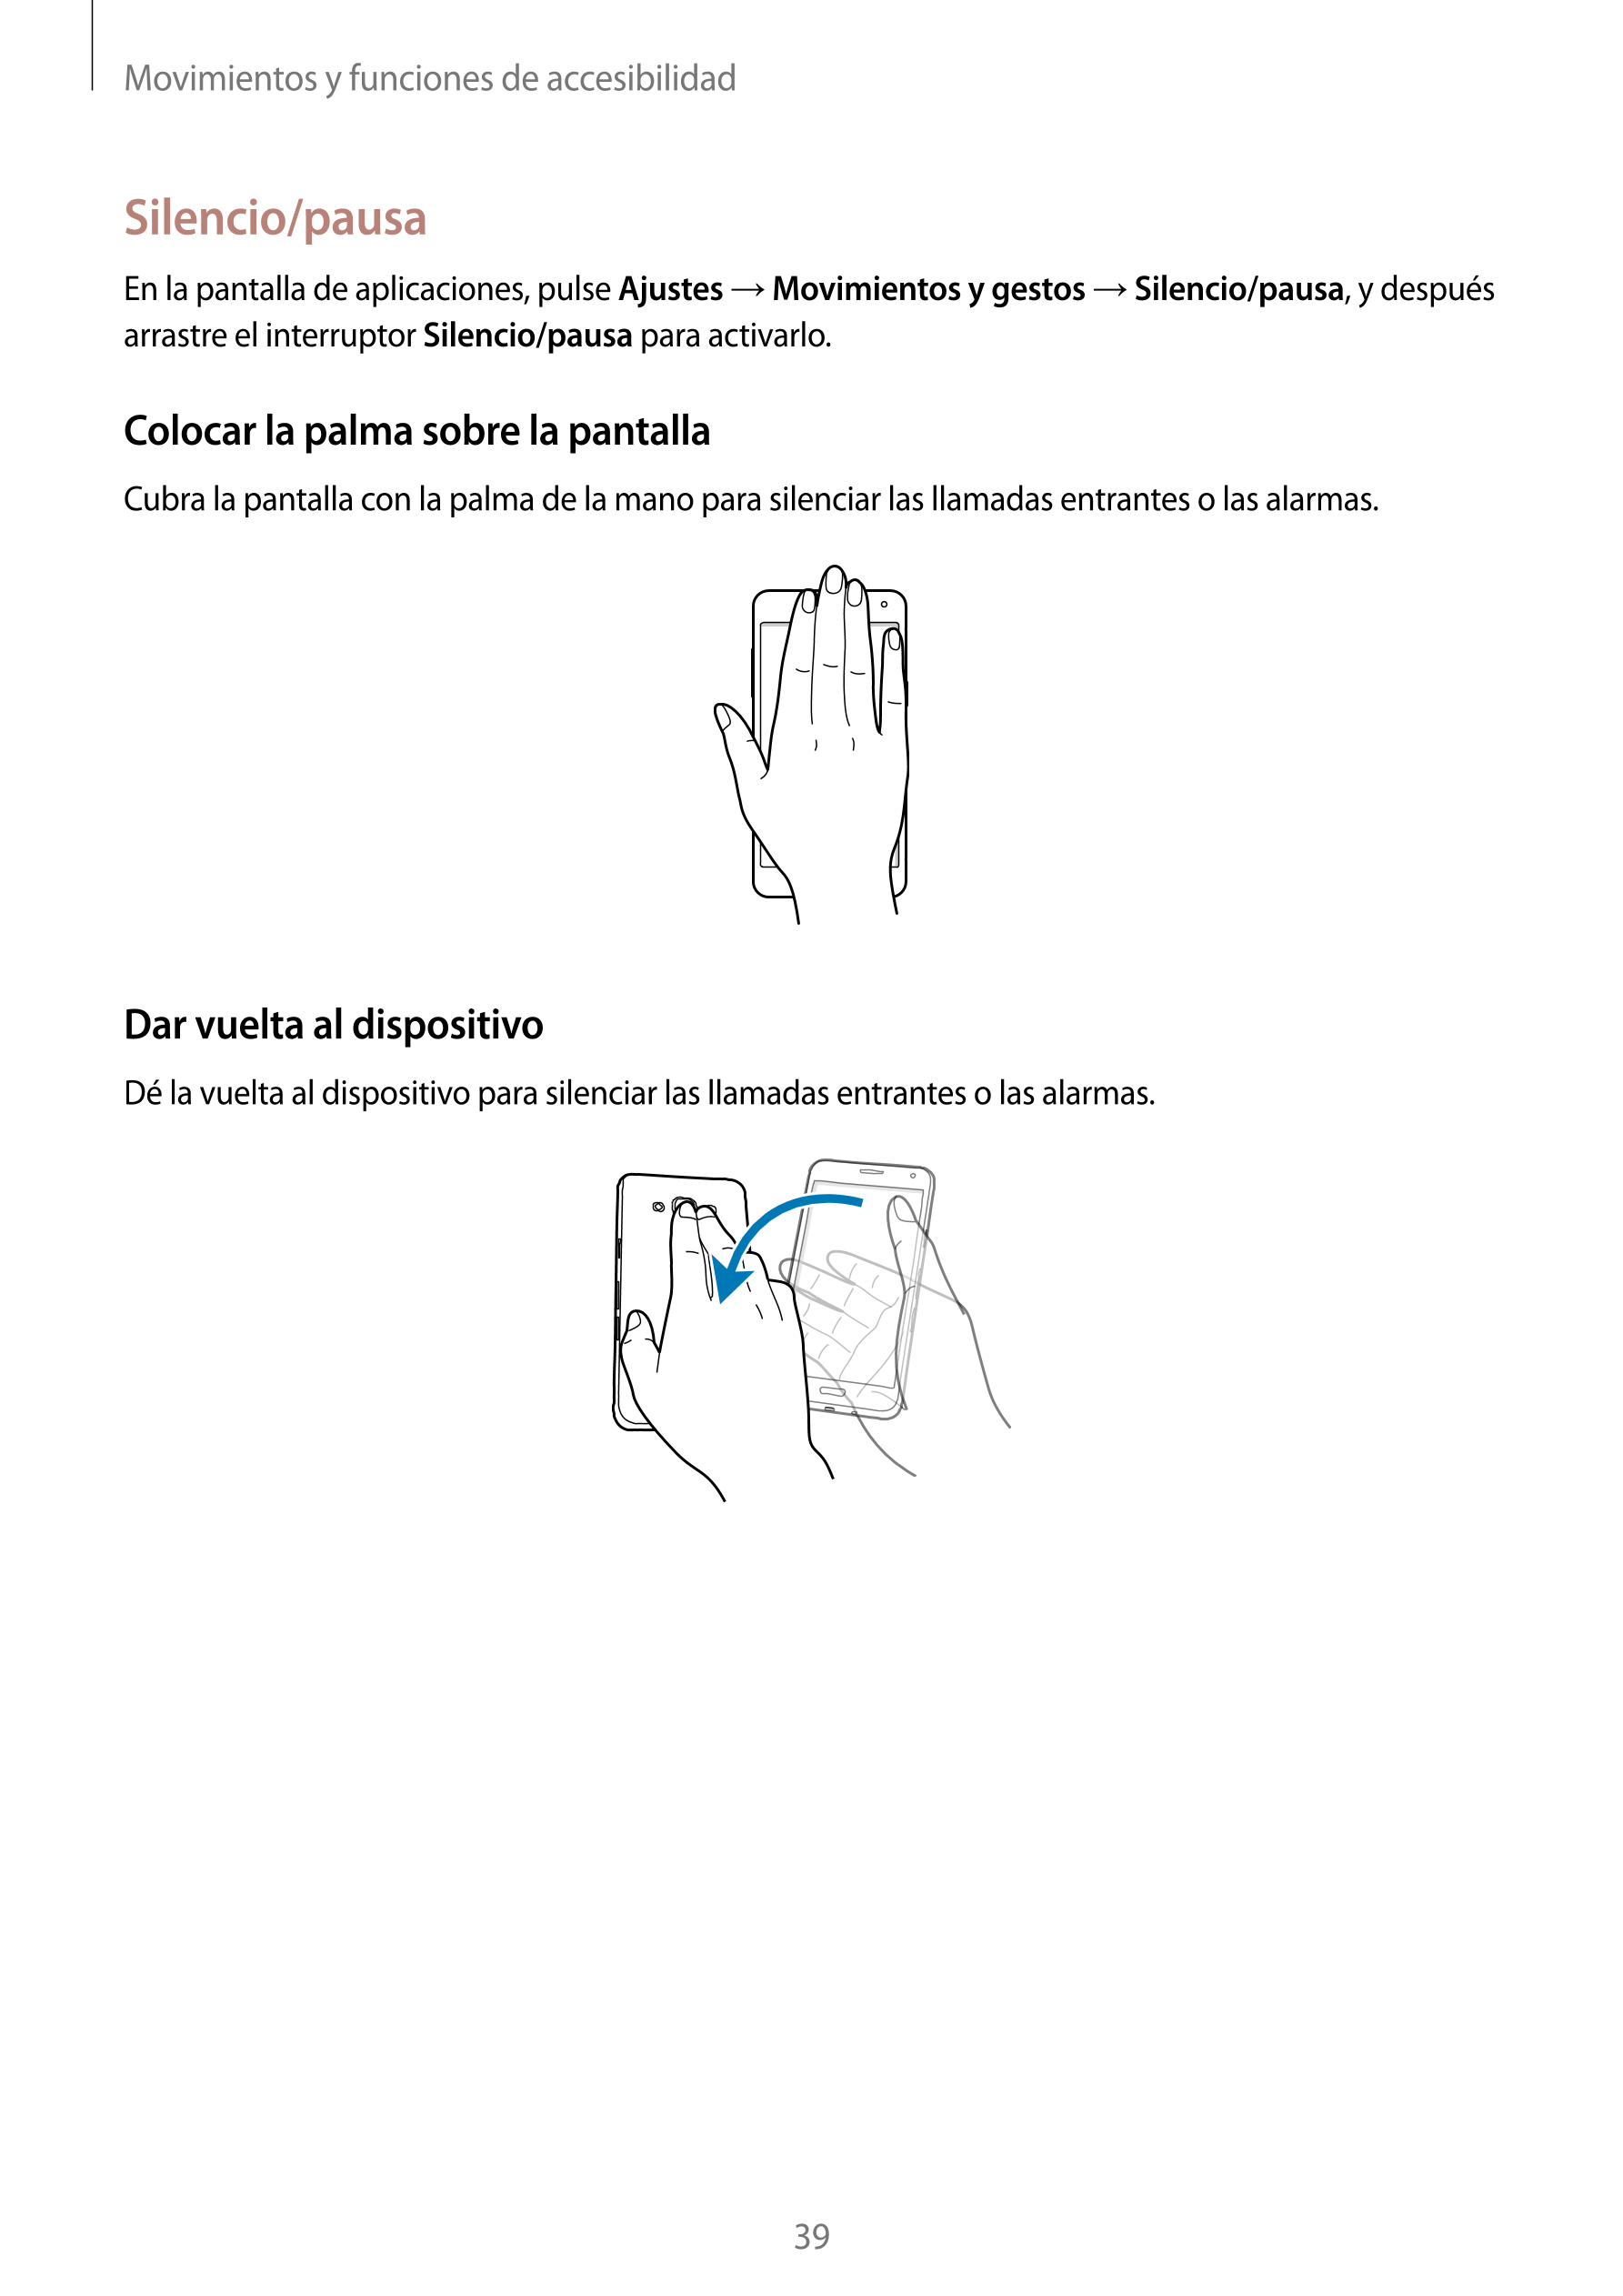 Movimientos y funciones de accesibilidad
Silencio/pausa
En la pantalla de aplicaciones, pulse  Ajustes  →  Movimientos y gestos 